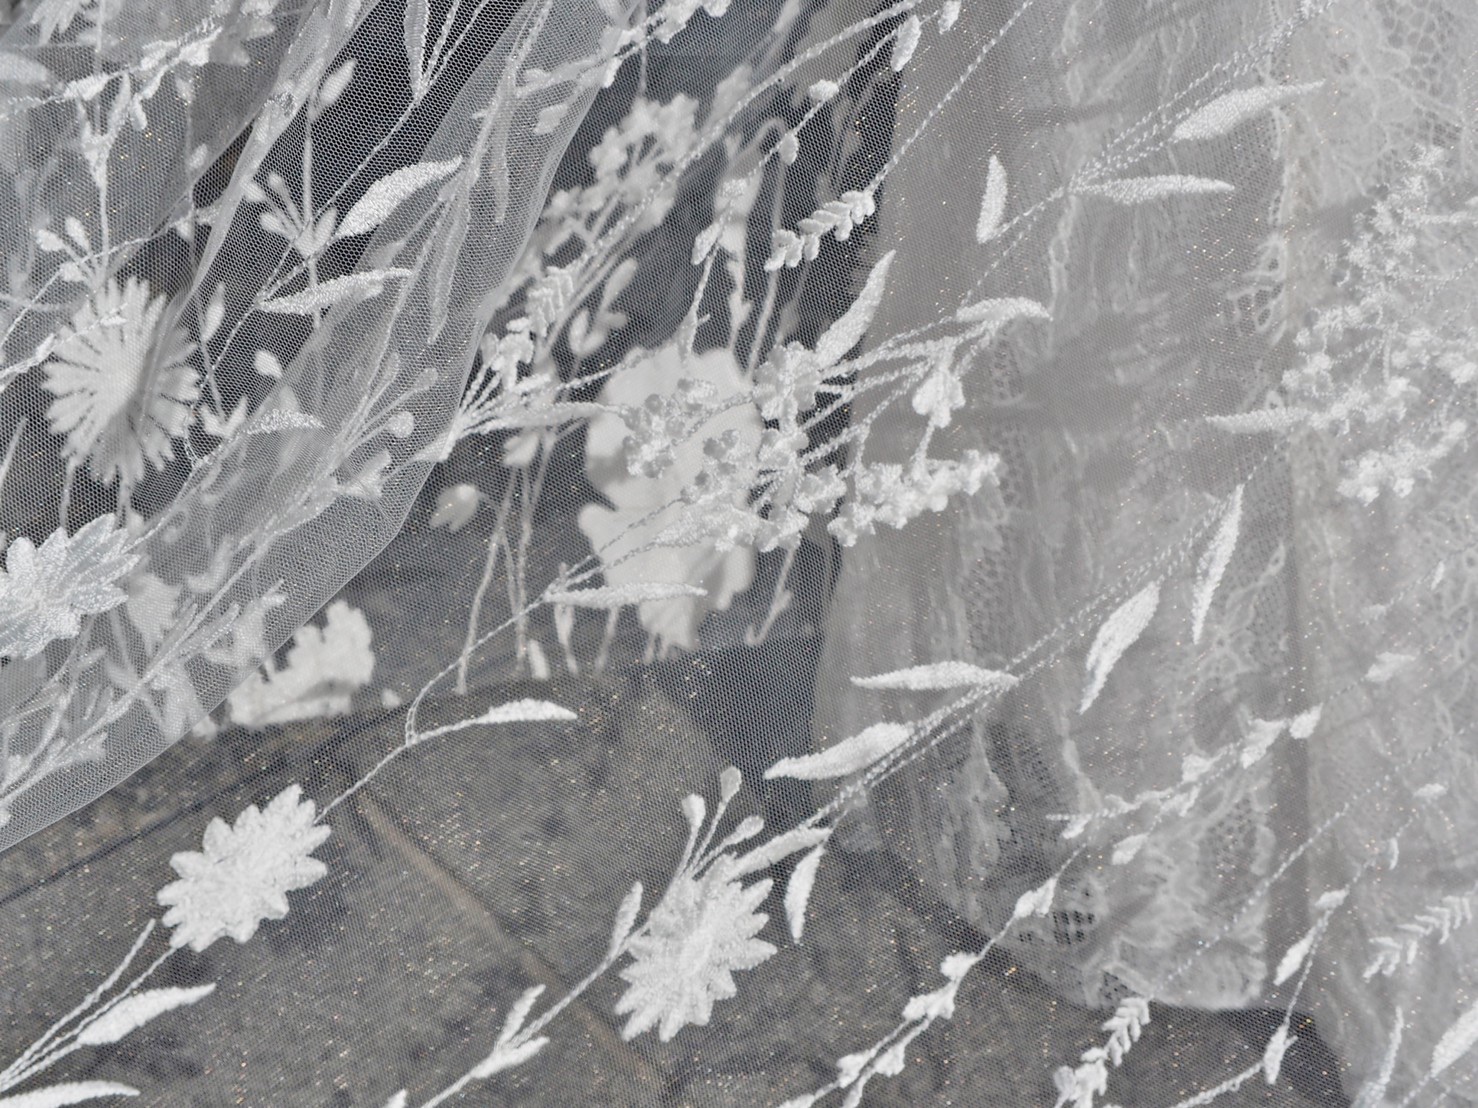 THE TREAT DRESSING神戸店がおススメする手刺繍で丁寧に描かれたフラワーモチーフのナイーム・カーンのウェディングドレス